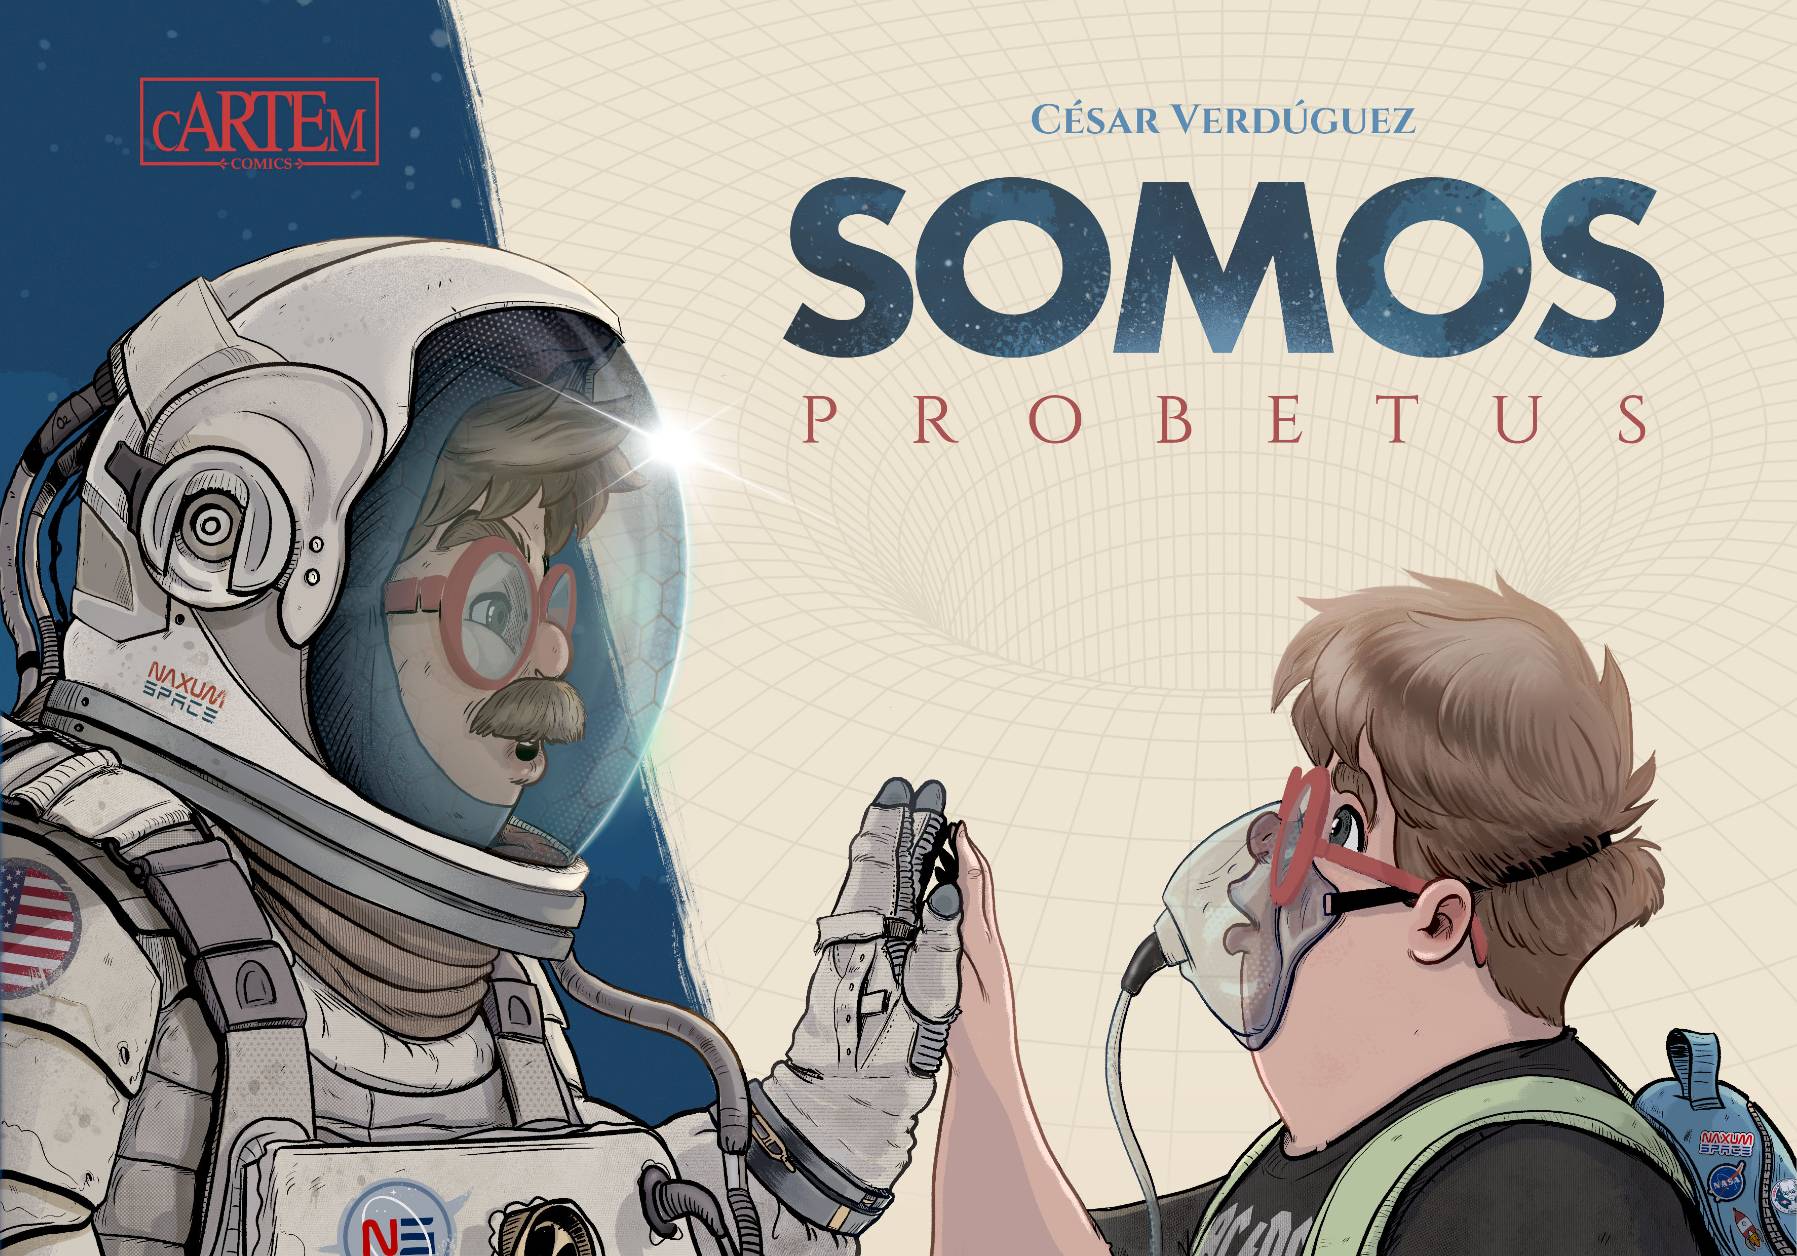 Somos Probetus', drama familiar y viajes espaciotemporales en un cómic  sorprendente